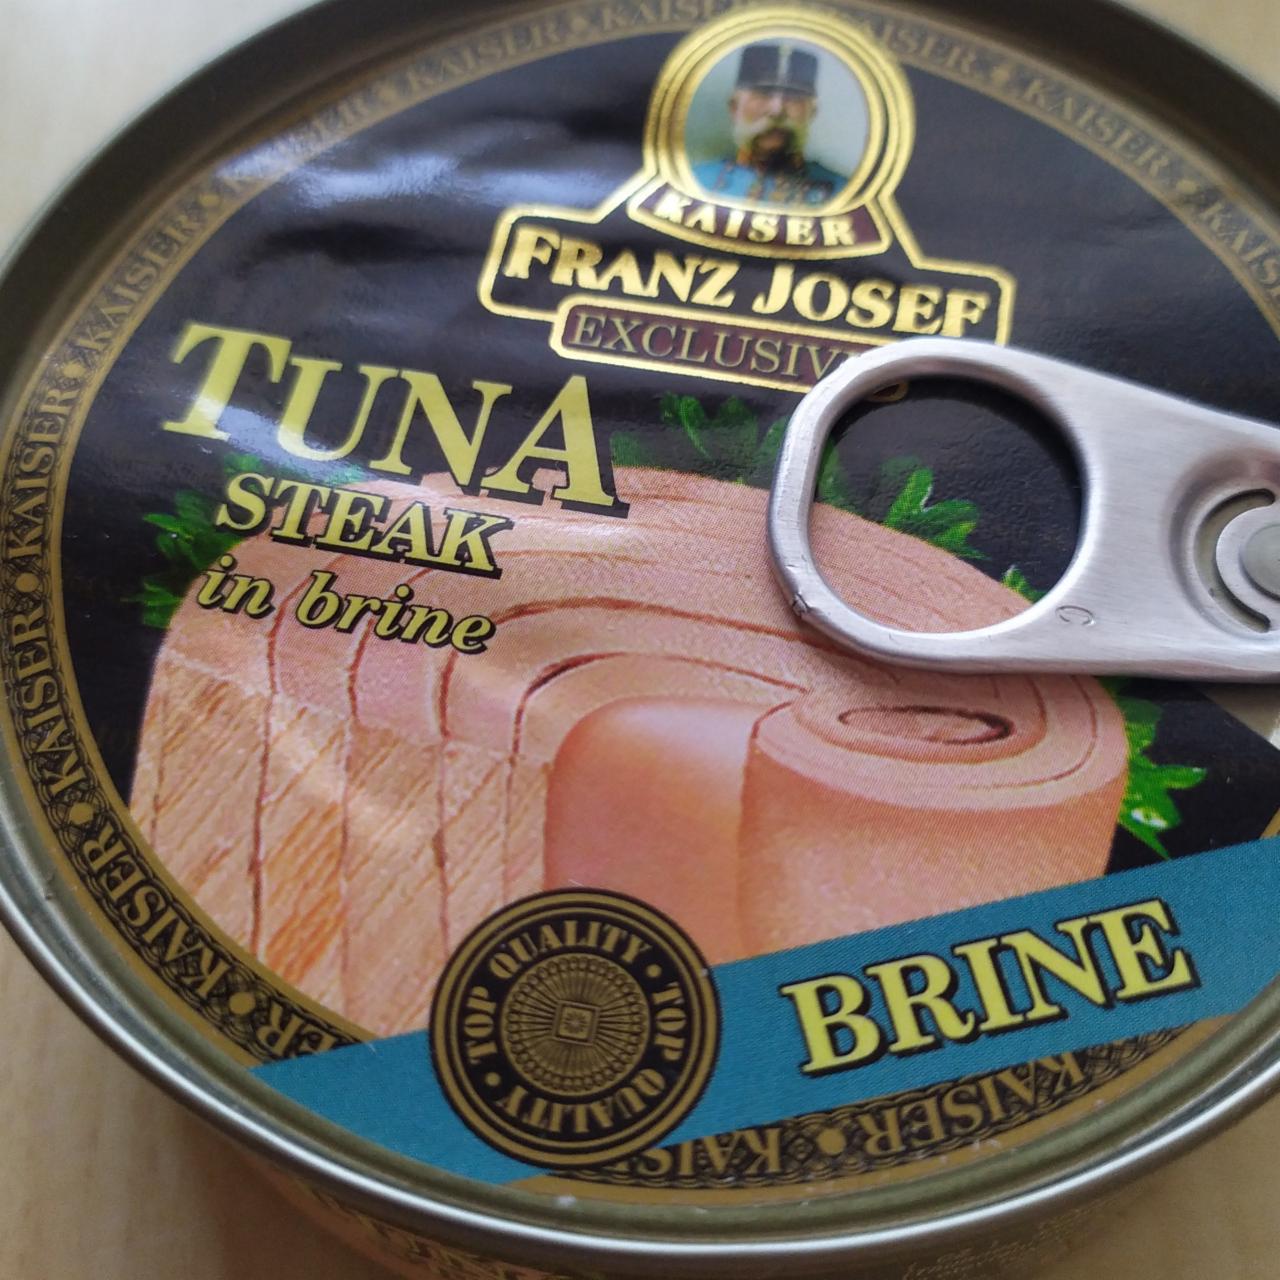 Fotografie - Tuna Steak in Brine Kaiser Franz Josef Exclusive